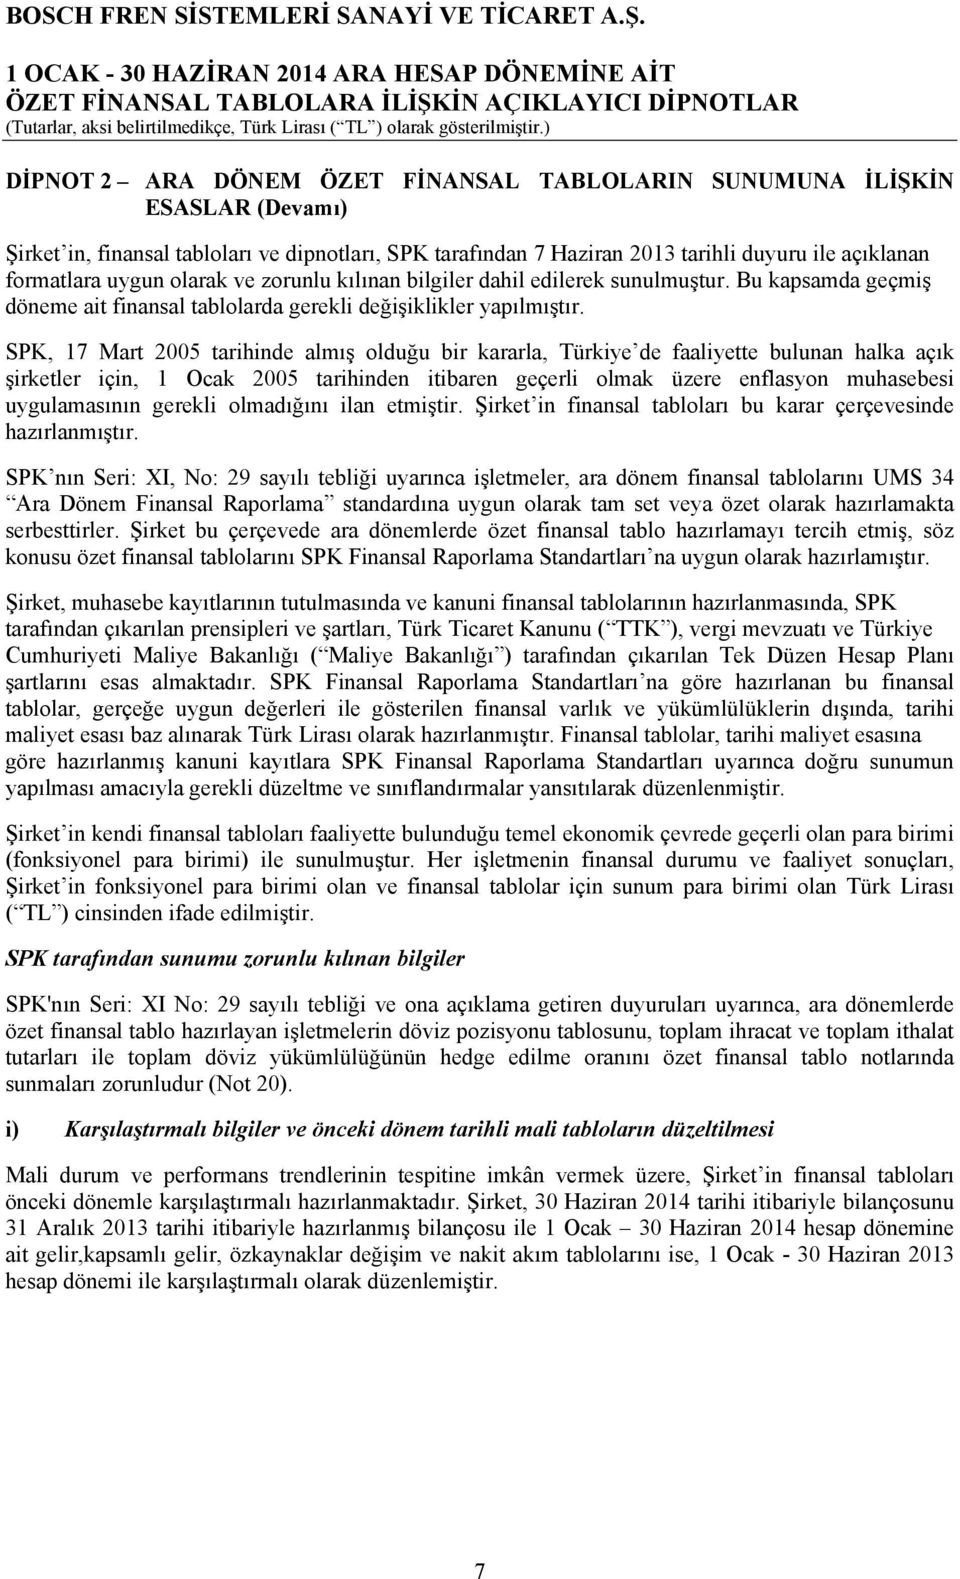 SPK, 17 Mart 2005 tarihinde almış olduğu bir kararla, Türkiye de faaliyette bulunan halka açık şirketler için, 1 Ocak 2005 tarihinden itibaren geçerli olmak üzere enflasyon muhasebesi uygulamasının